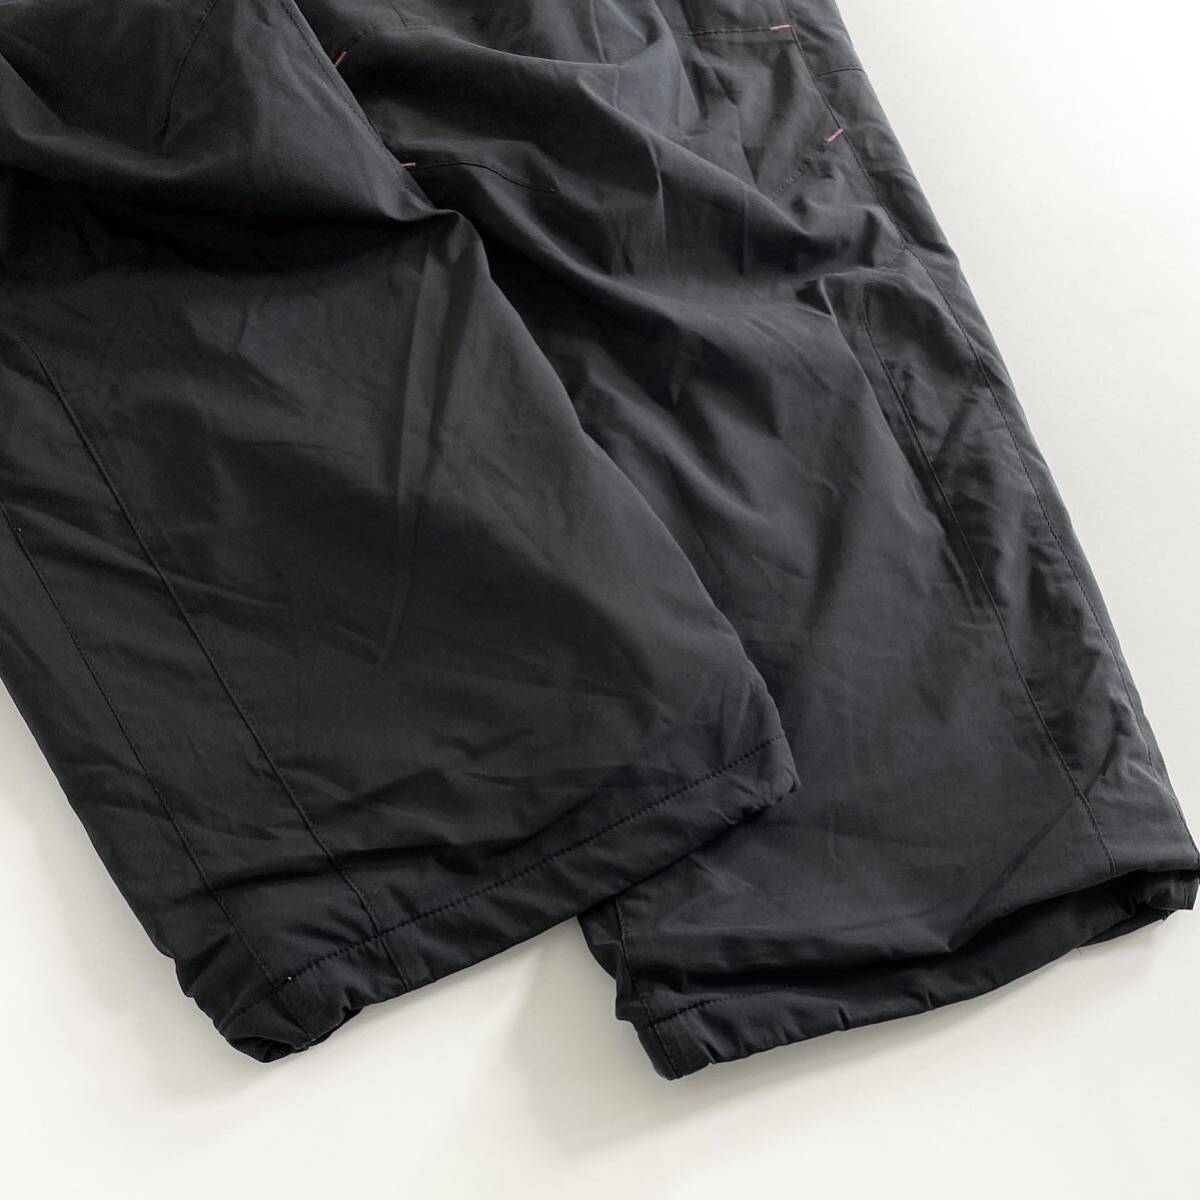 Ac29 OAKLEY オークリー ロングパンツ サイズL ブラック メンズ スポーツウェア 裾ドローコード ジップアップ ロゴ 刺繍 ボトムス_画像4